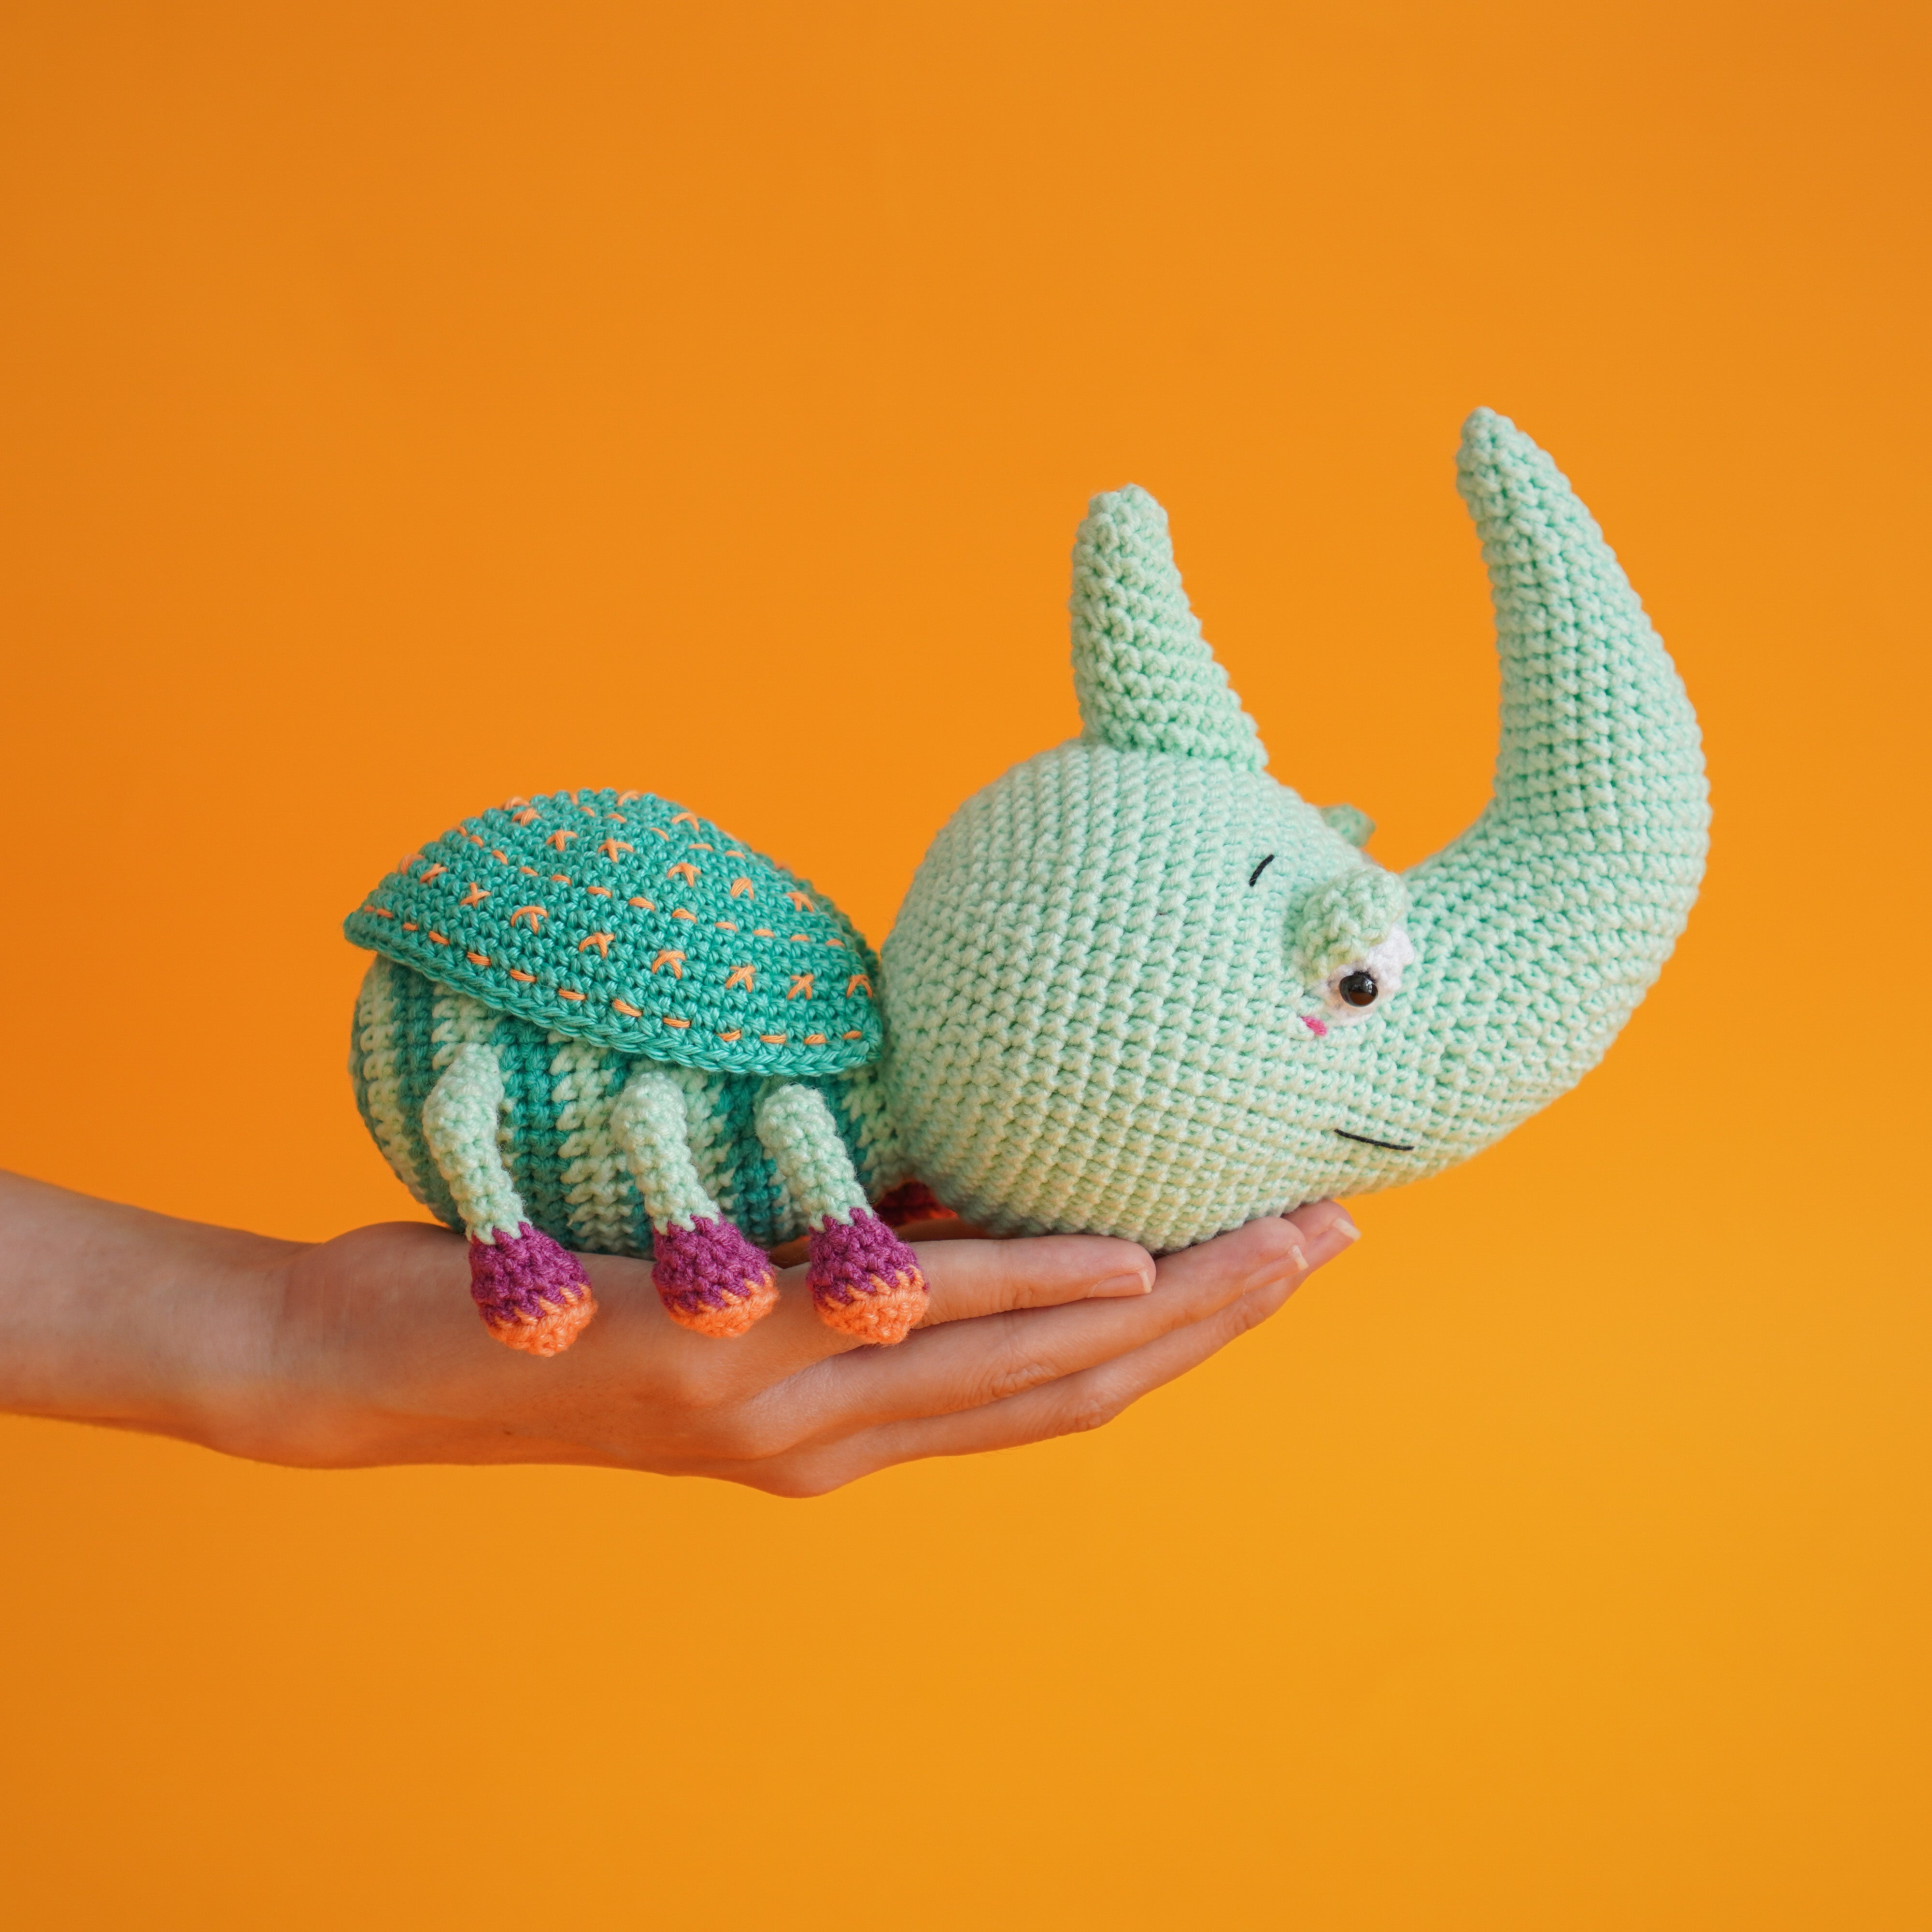 Hercules Beetle Crochet Pattern by Aquariwool Crochet (Crochet Doll Pattern/Amigurumi Pattern for Baby gift)